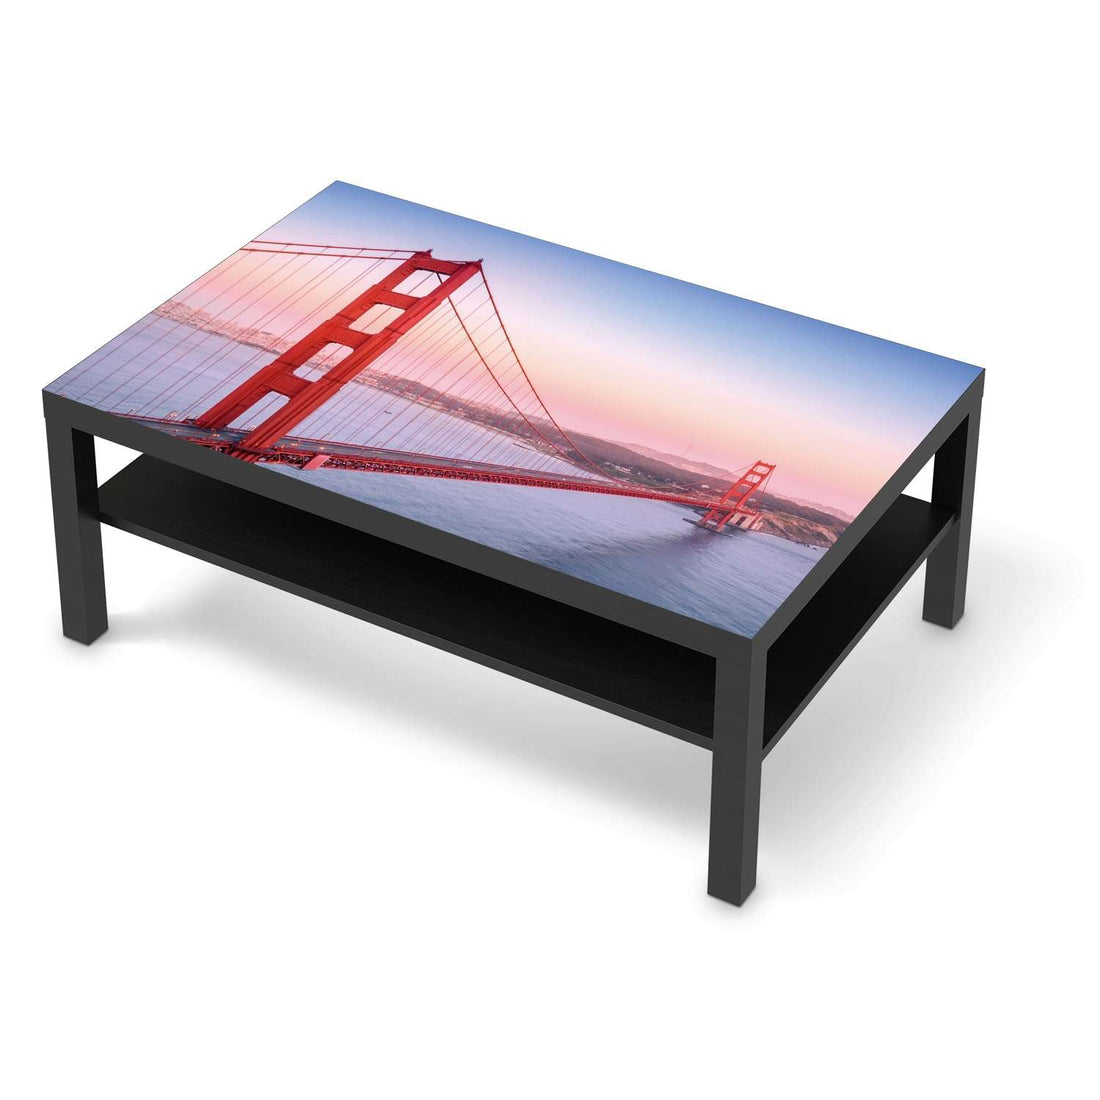 Klebefolie Golden Gate - IKEA Lack Tisch 118x78 cm - schwarz